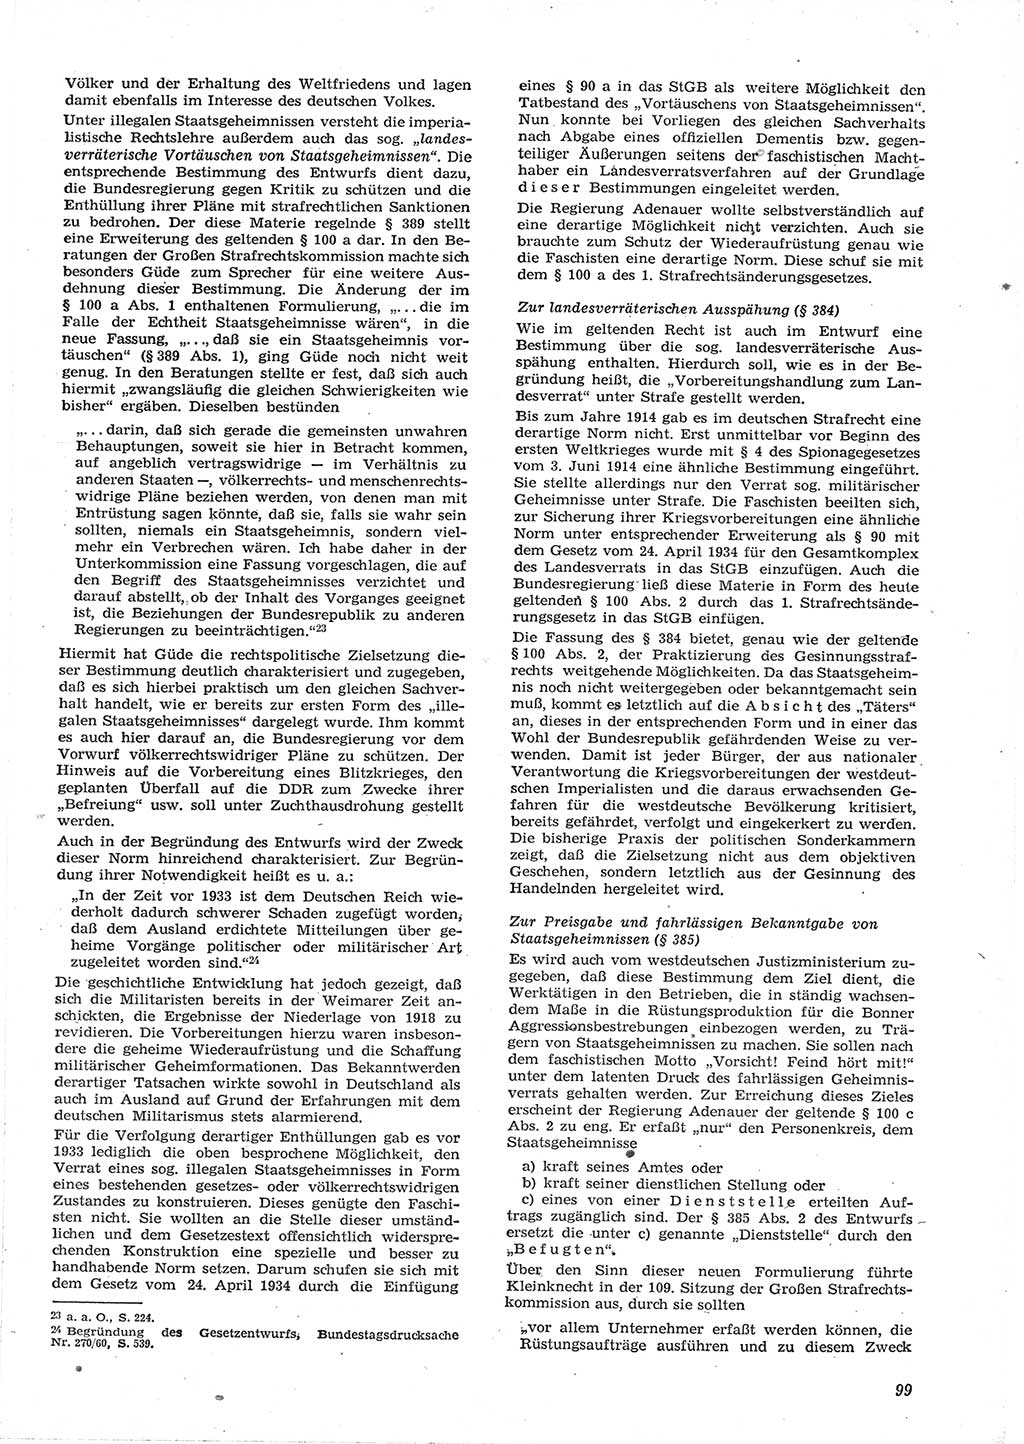 Neue Justiz (NJ), Zeitschrift für Recht und Rechtswissenschaft [Deutsche Demokratische Republik (DDR)], 15. Jahrgang 1961, Seite 99 (NJ DDR 1961, S. 99)